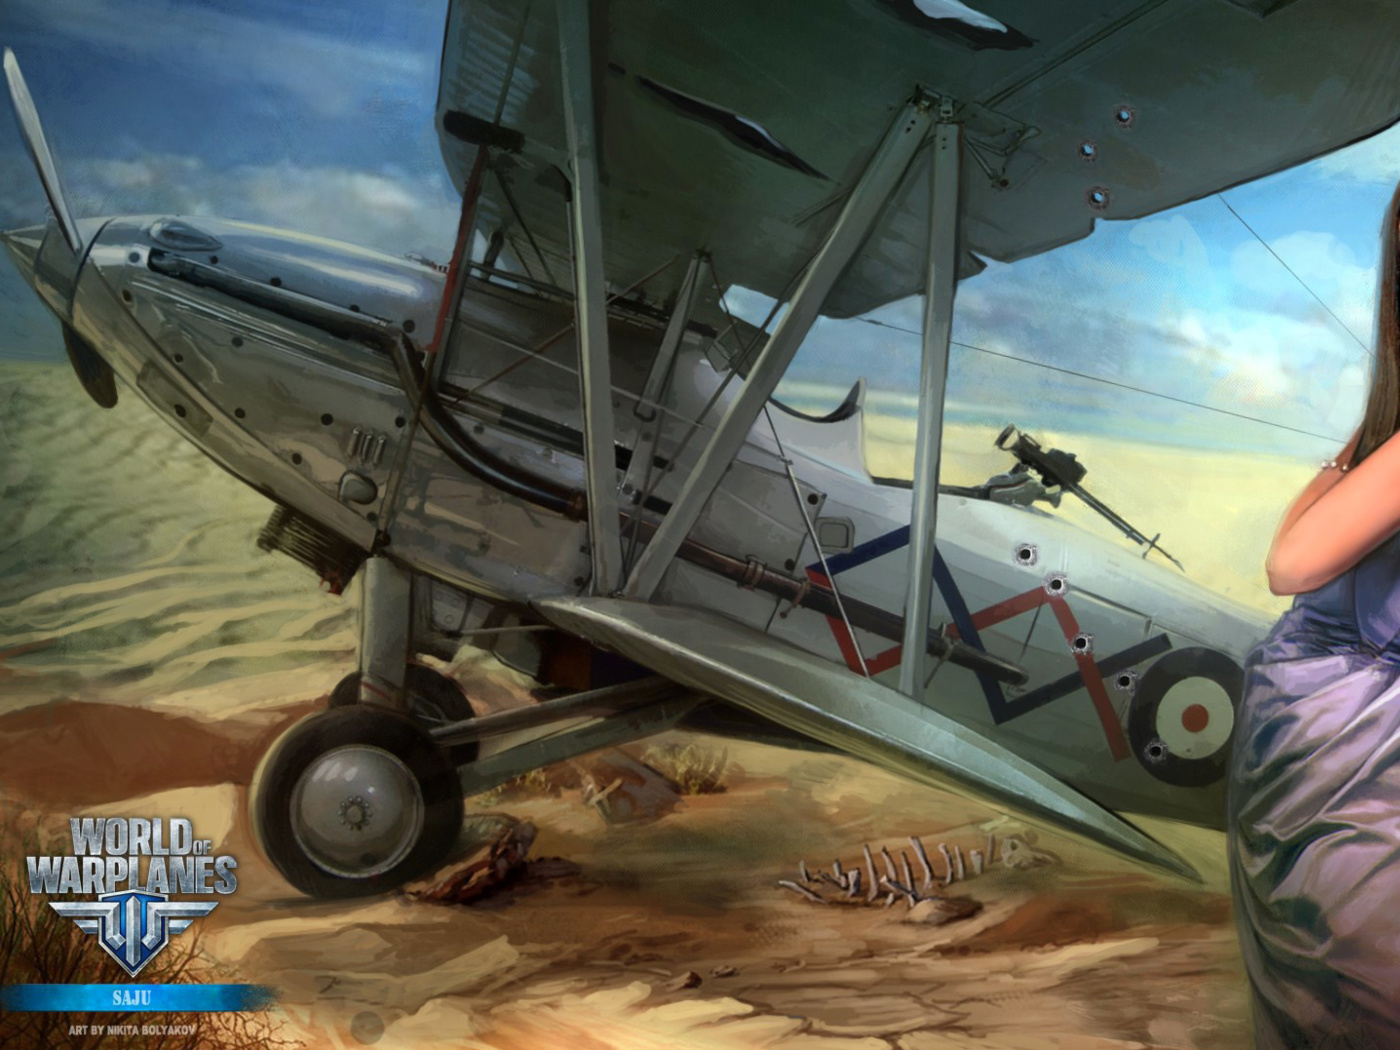 World of Warplanes wallpaper 1400x1050